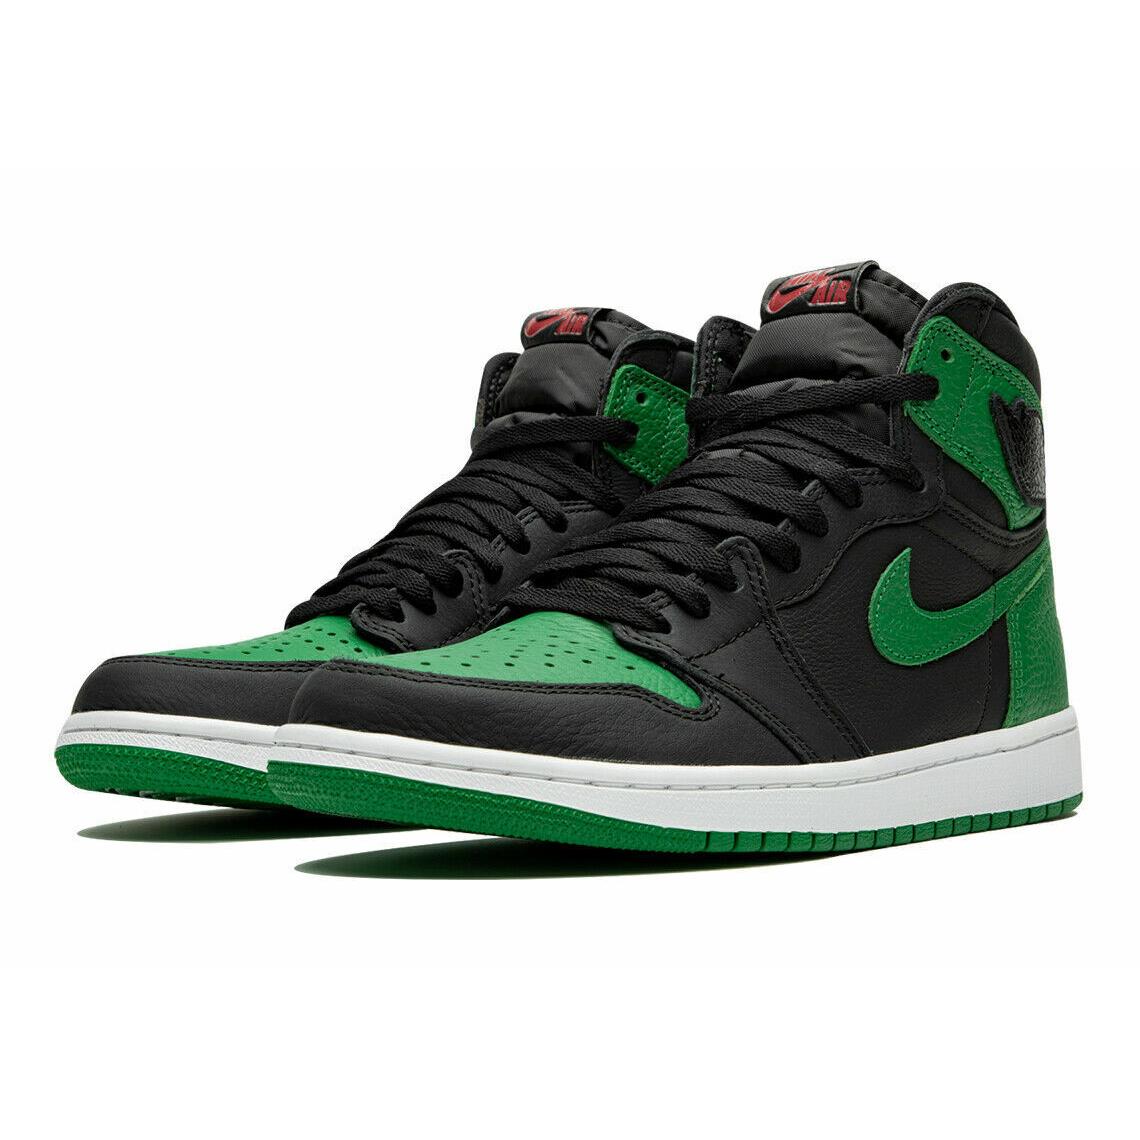 Nike Air Jordan 1 Retro High OG Sneaker Shoe 555088 030 Men`s Size 10.5 Pine Green